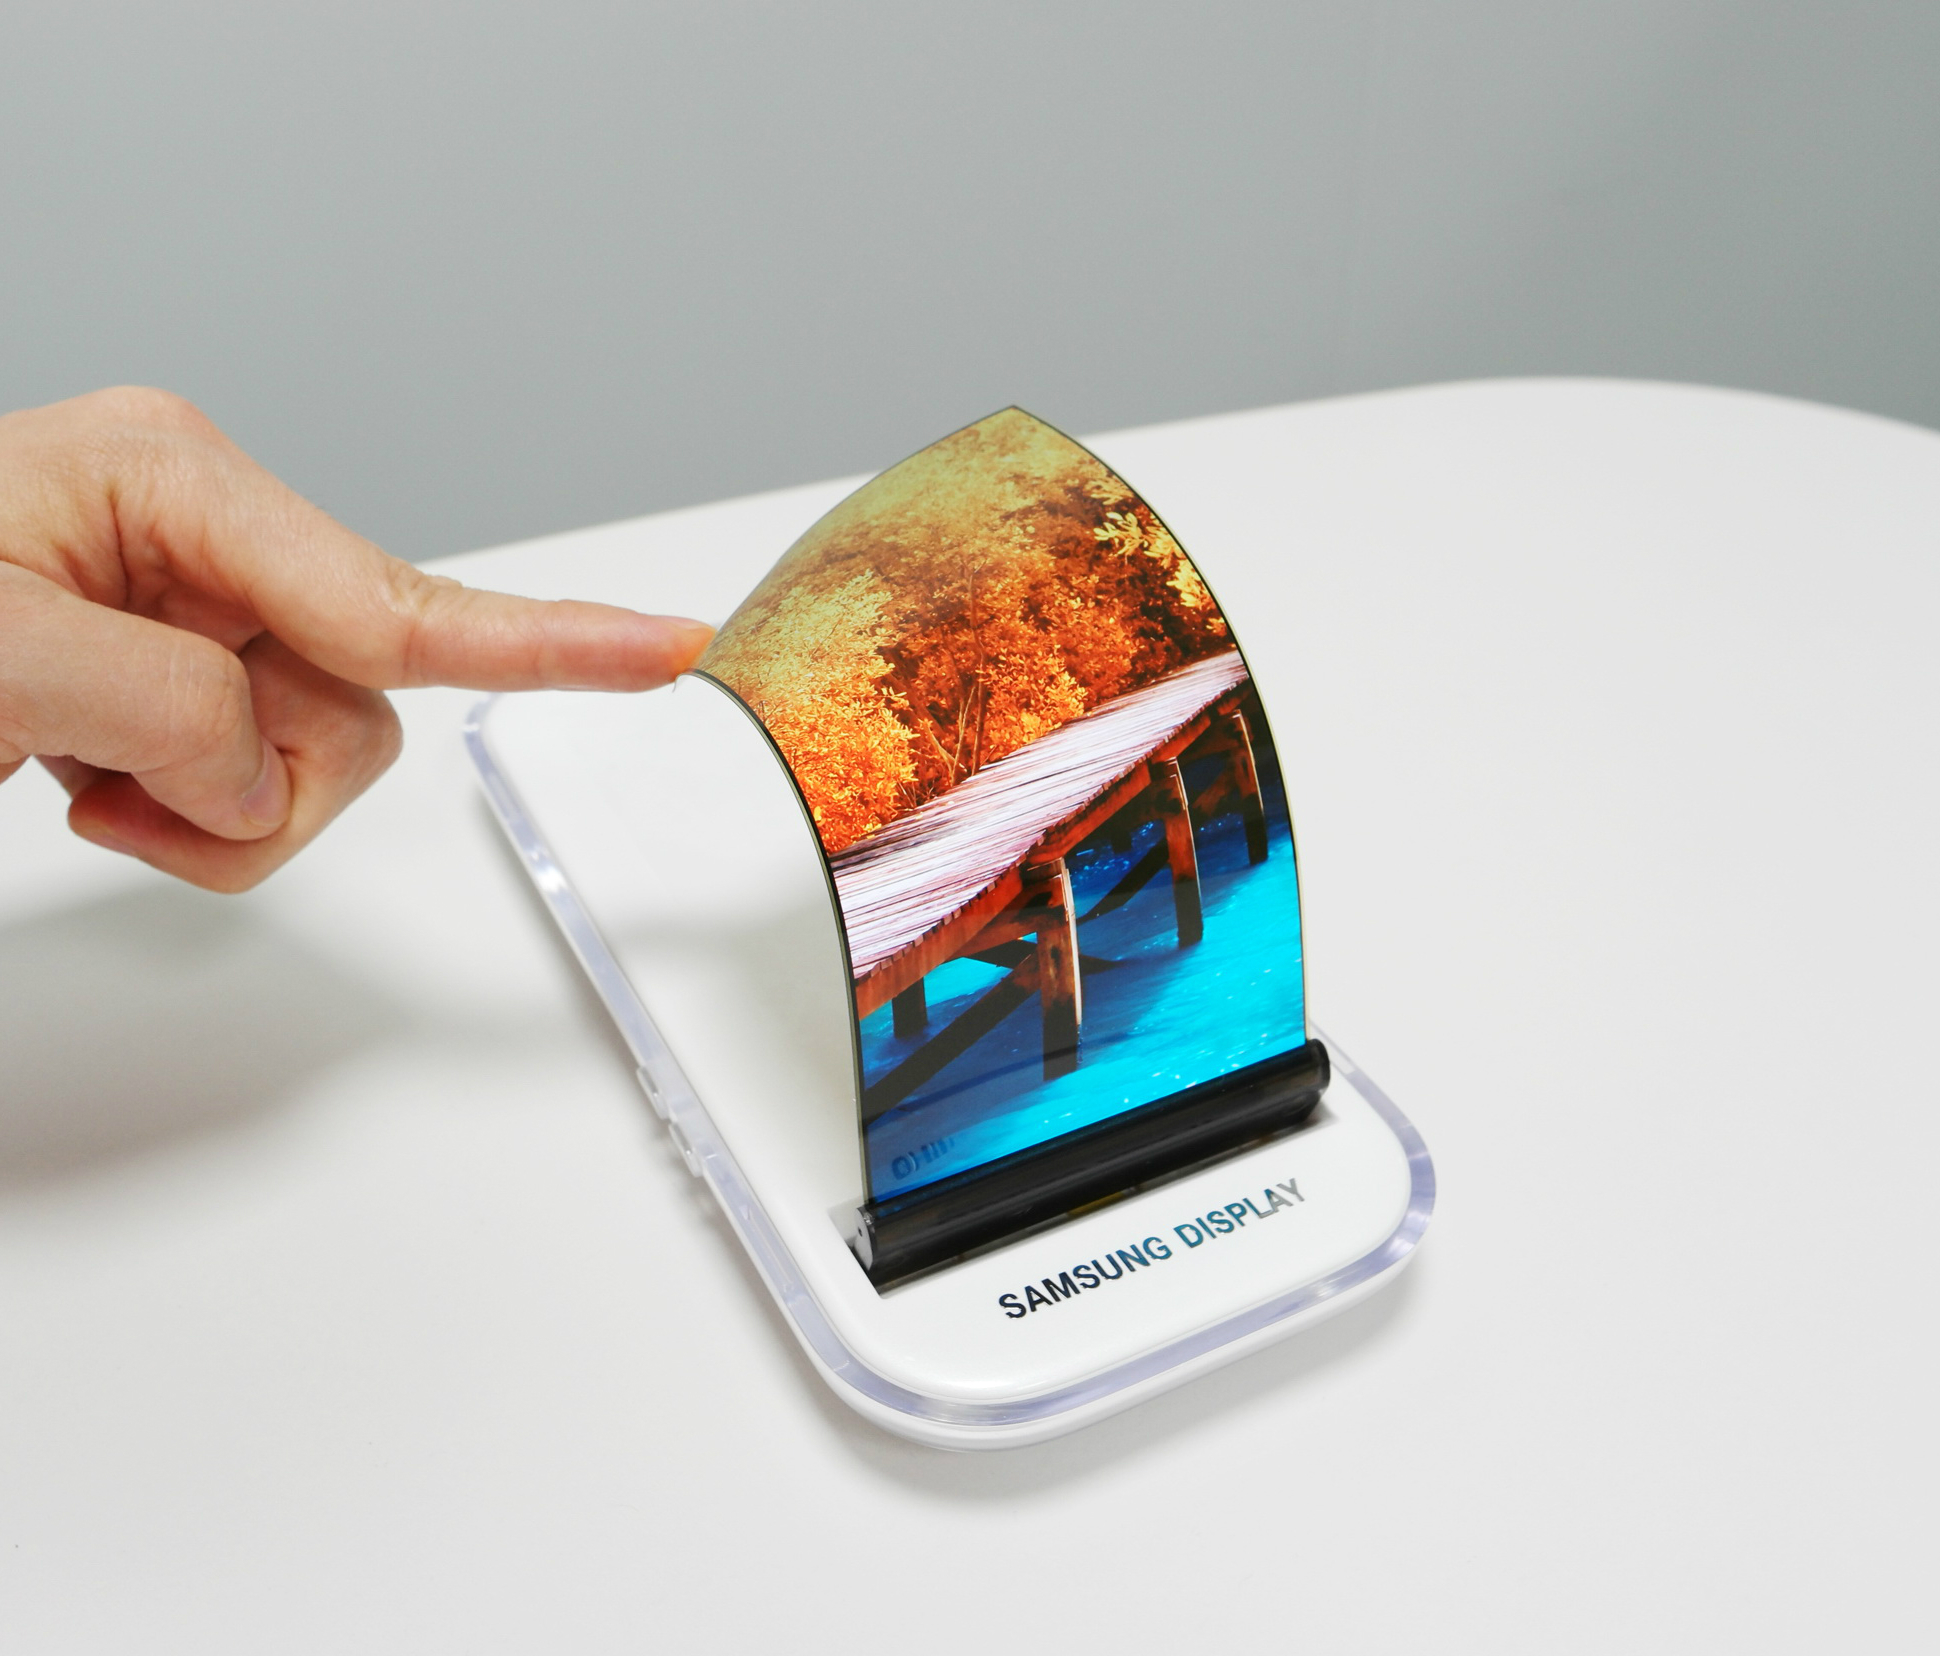 Гнущий самсунг. Самсунг галакси с гибким экраном. Сгибающийся смартфон Samsung. OLED дисплей самсунг галакси ;4. Самсунг галакси со сгибающимся экраном.